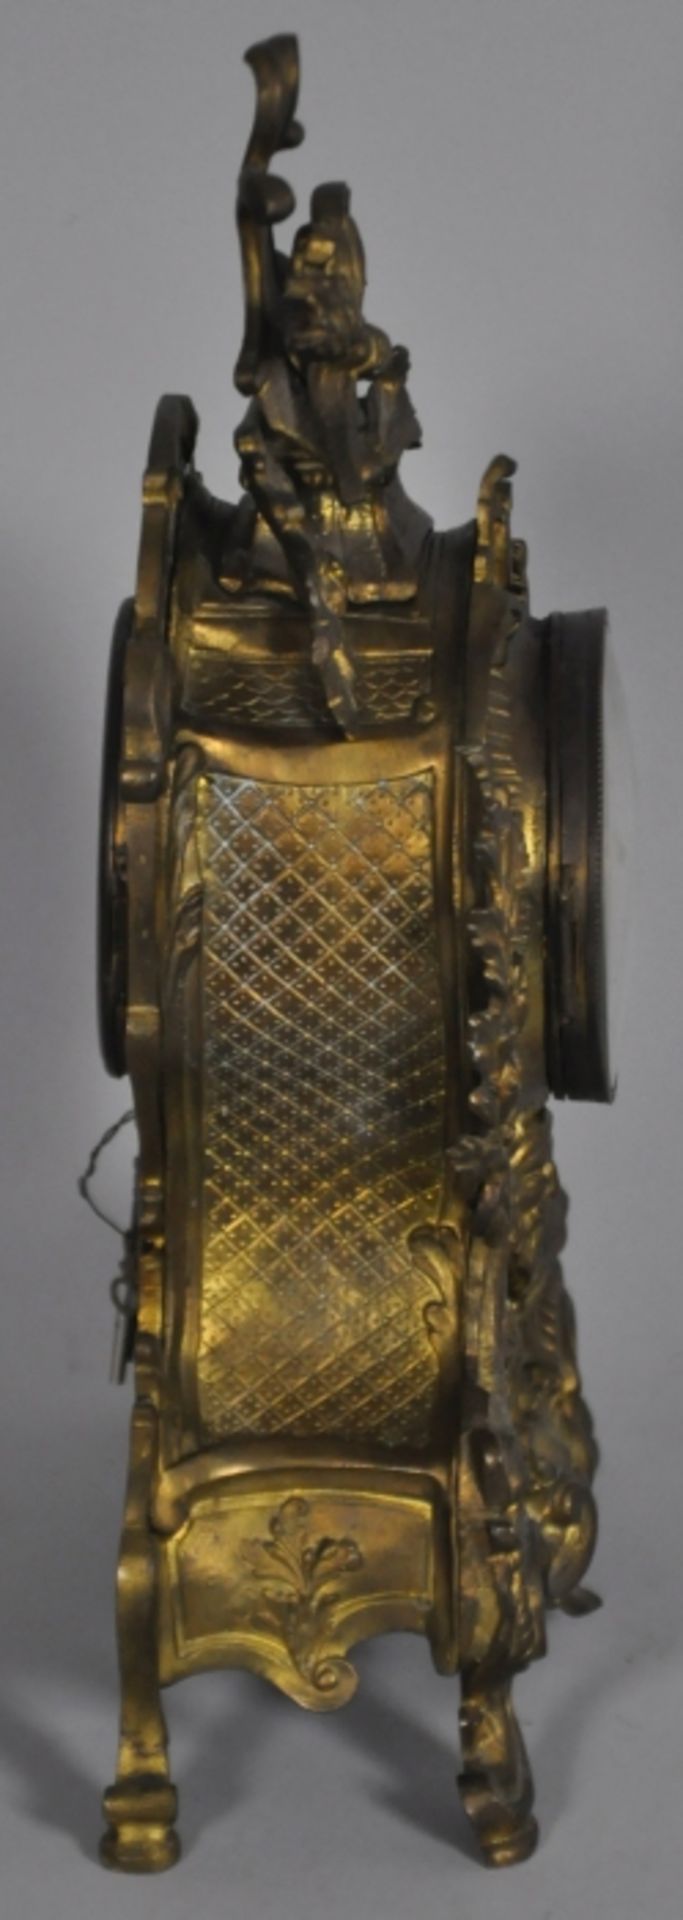 KAMINUHR reich dekorierter Stand, Metall vergoldet, altersbedingt leicht gedunkelt, darin Uhr mit - Bild 2 aus 2